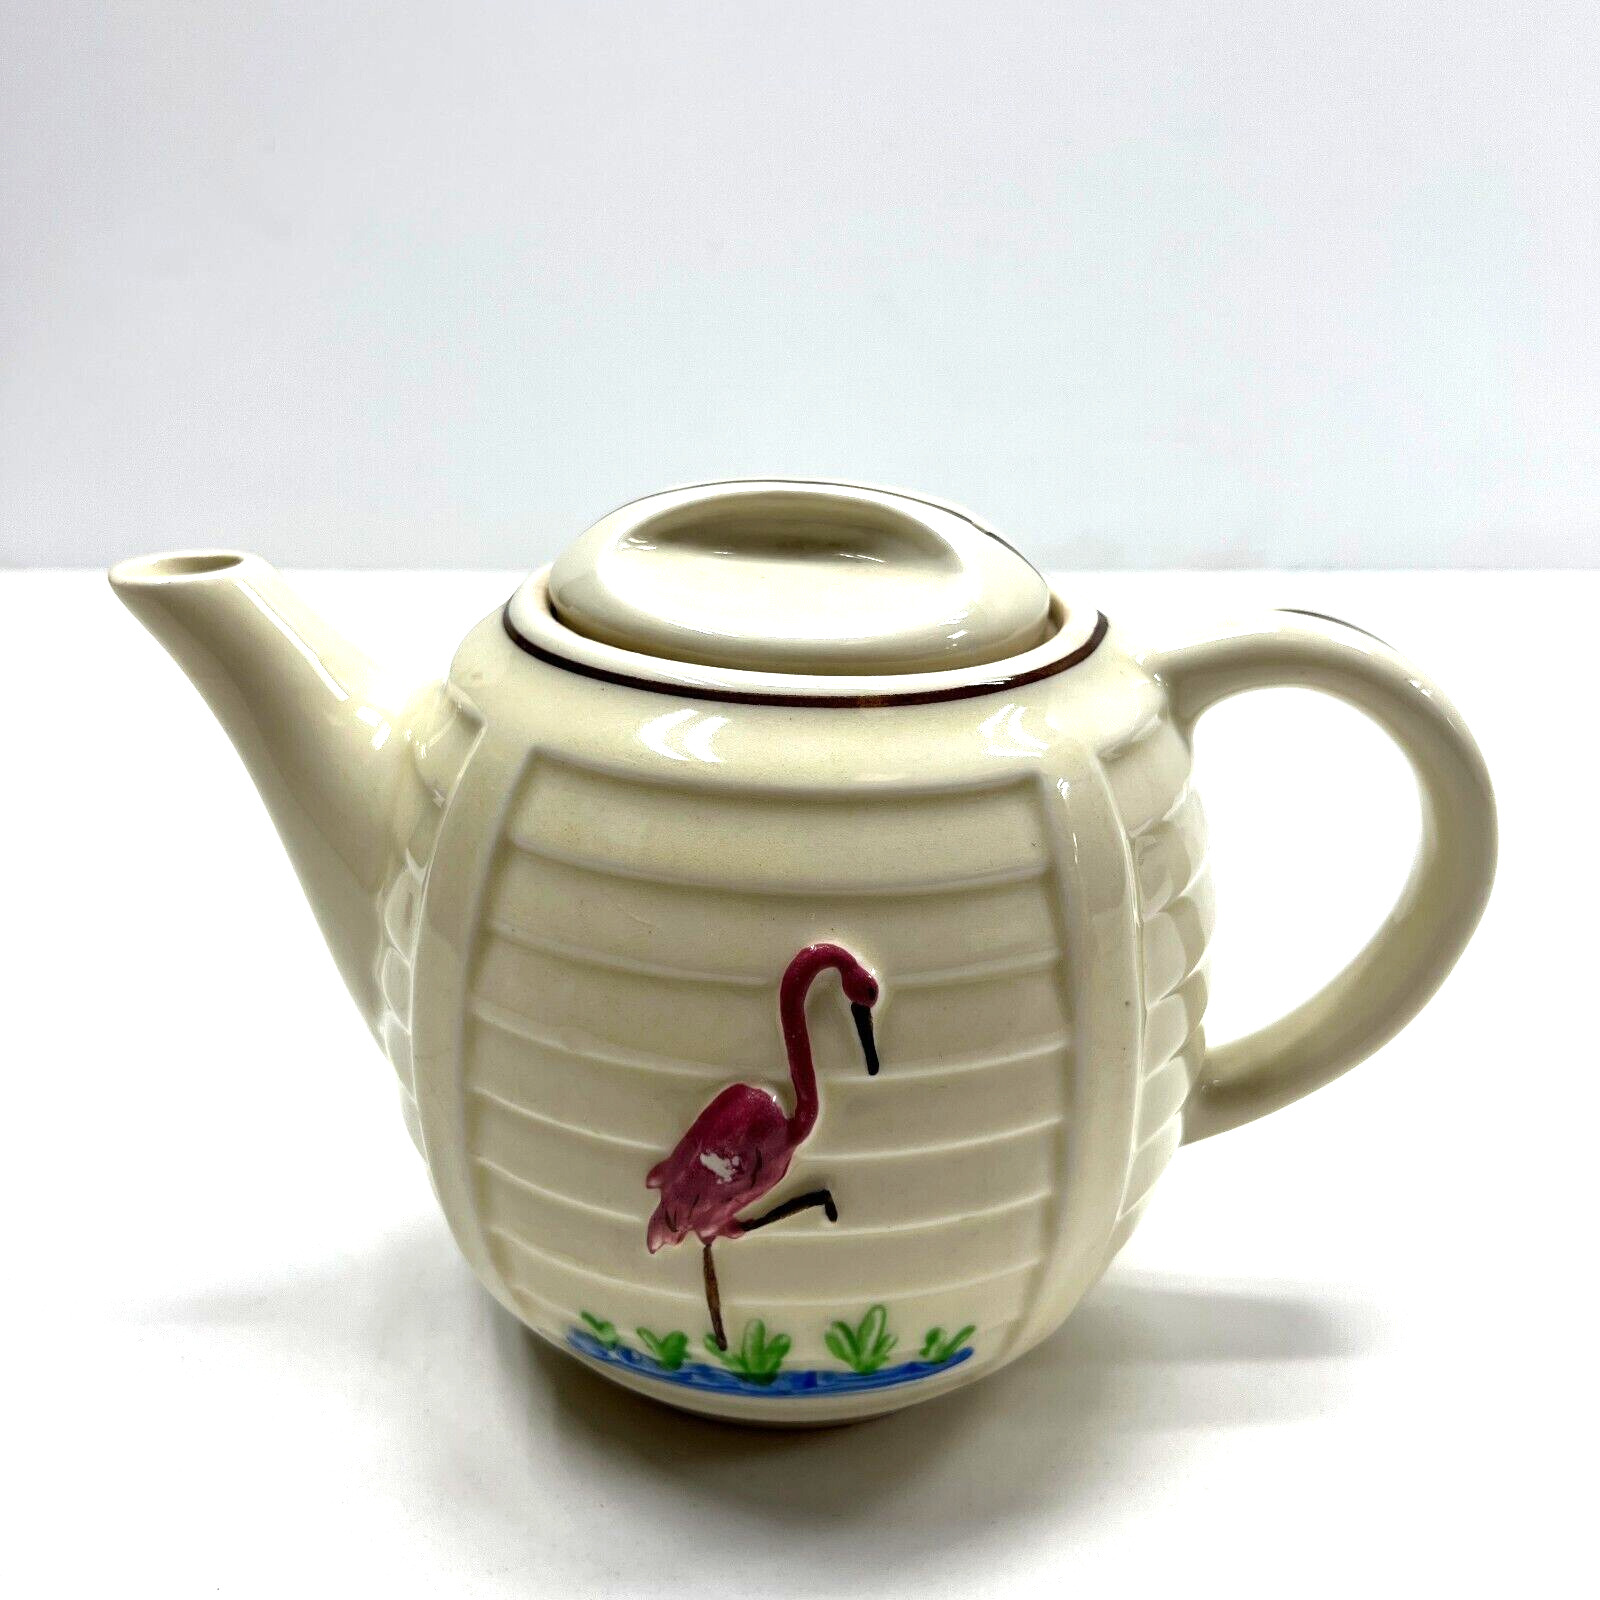 Vintage Porcelier Vitreous China Hand Painted Flamingo Tea Pot 1930-1940’s